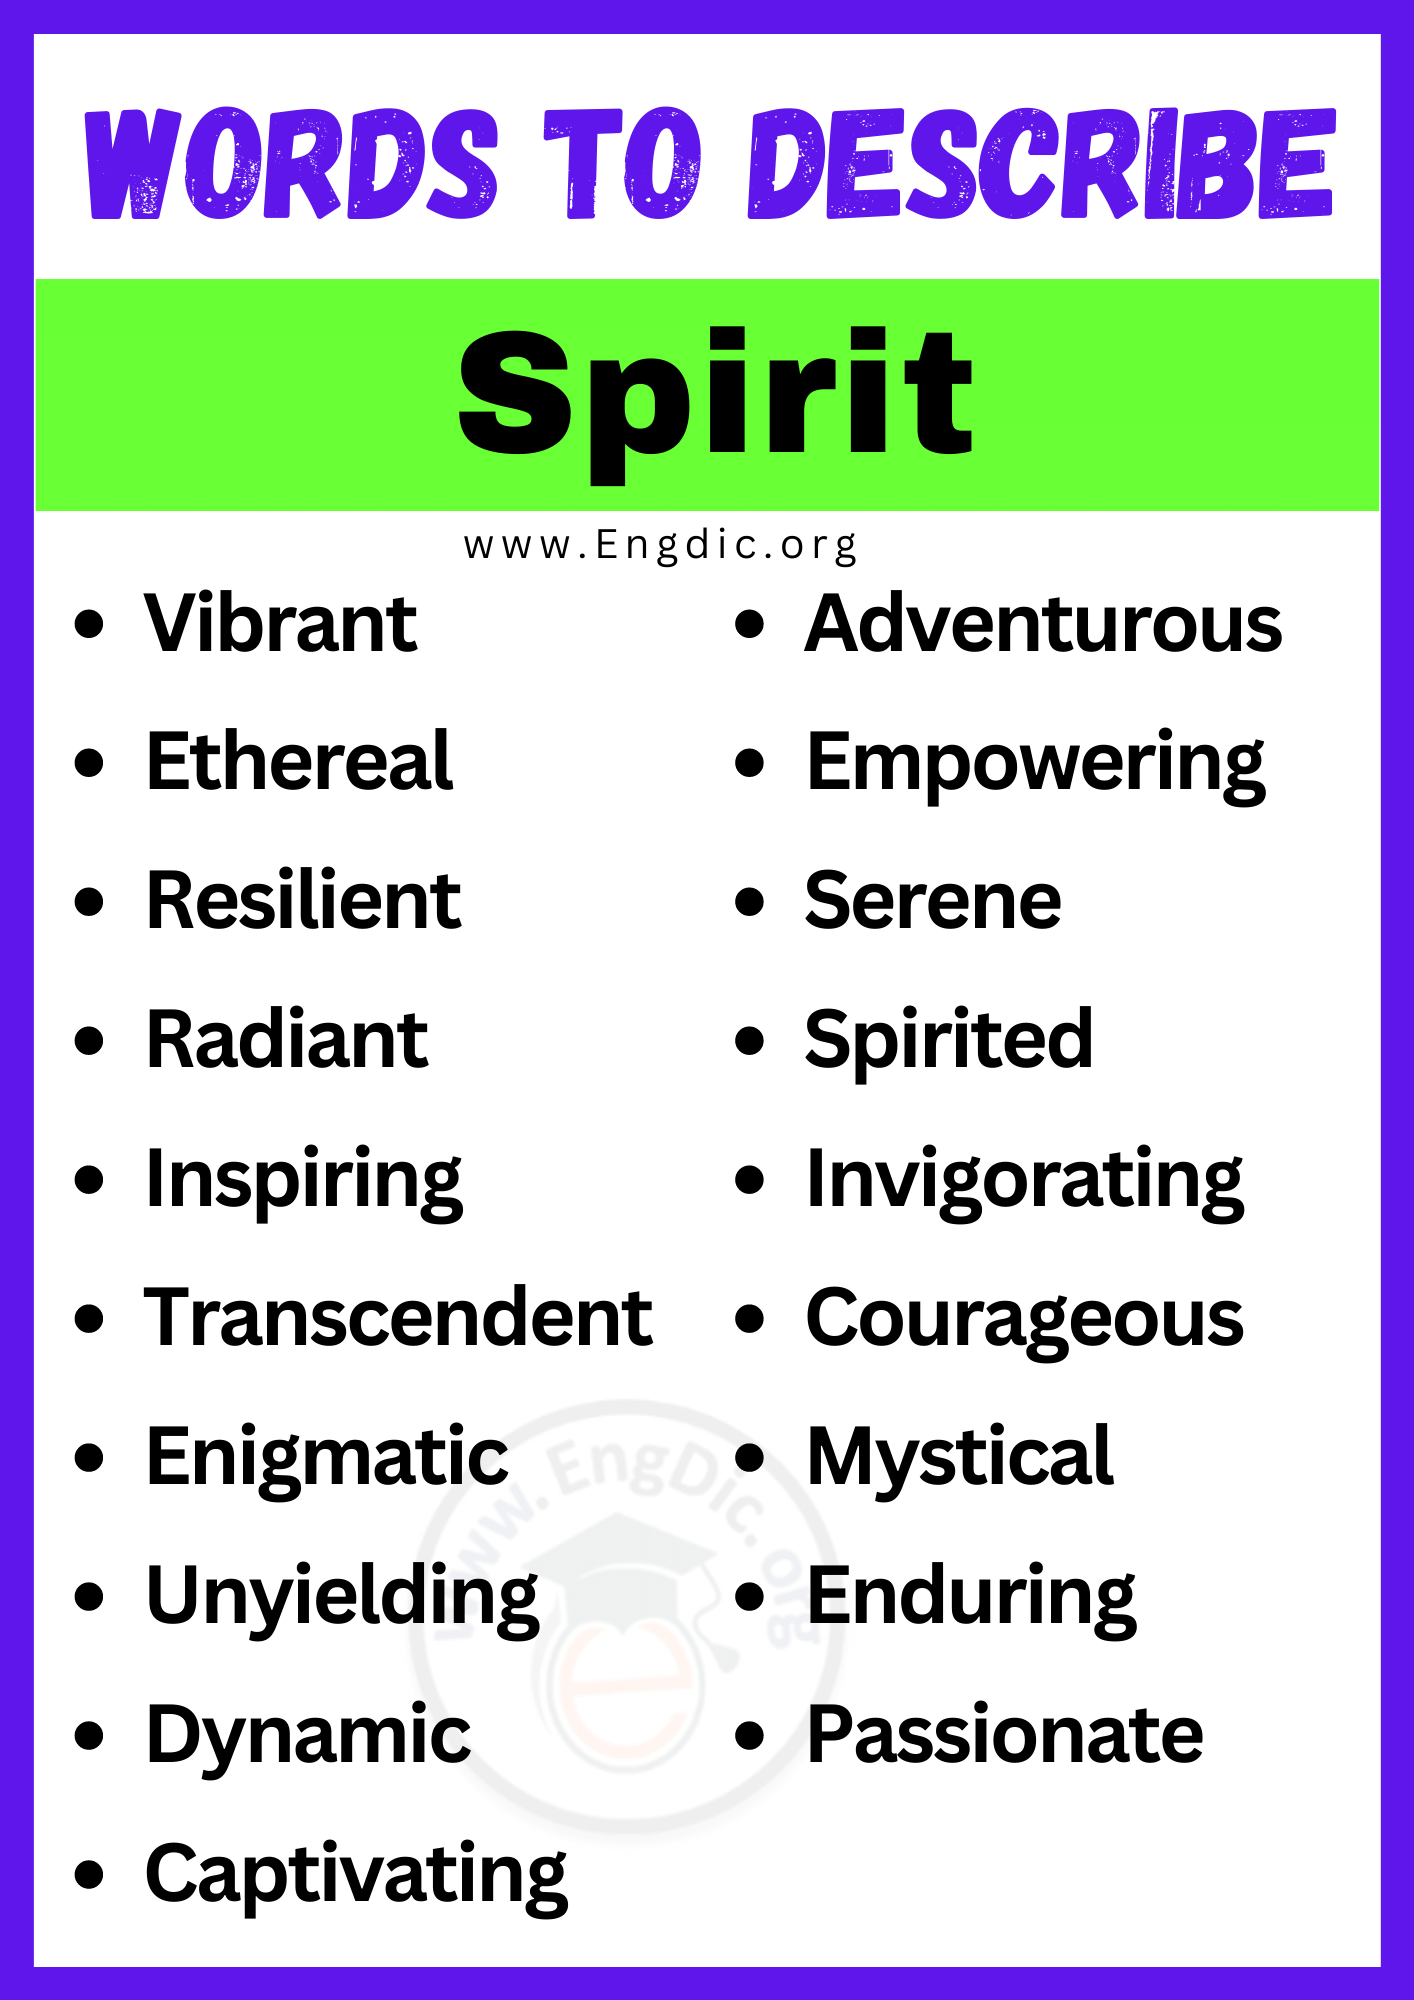 Words to Describe Spirit